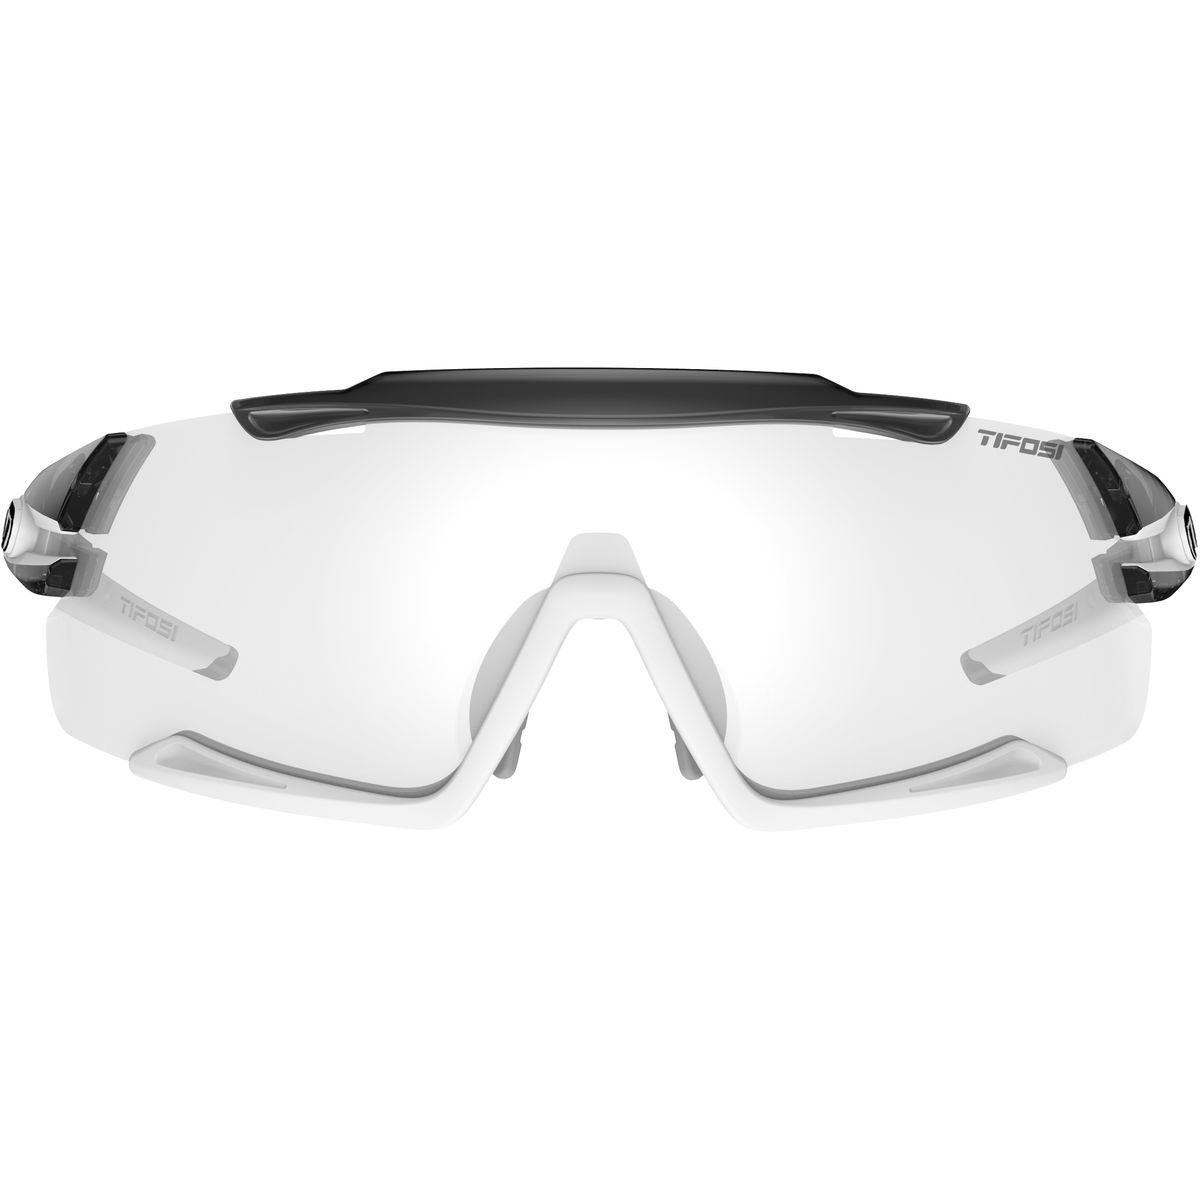 Фотохромные солнцезащитные очки Aethon Tifosi Optics